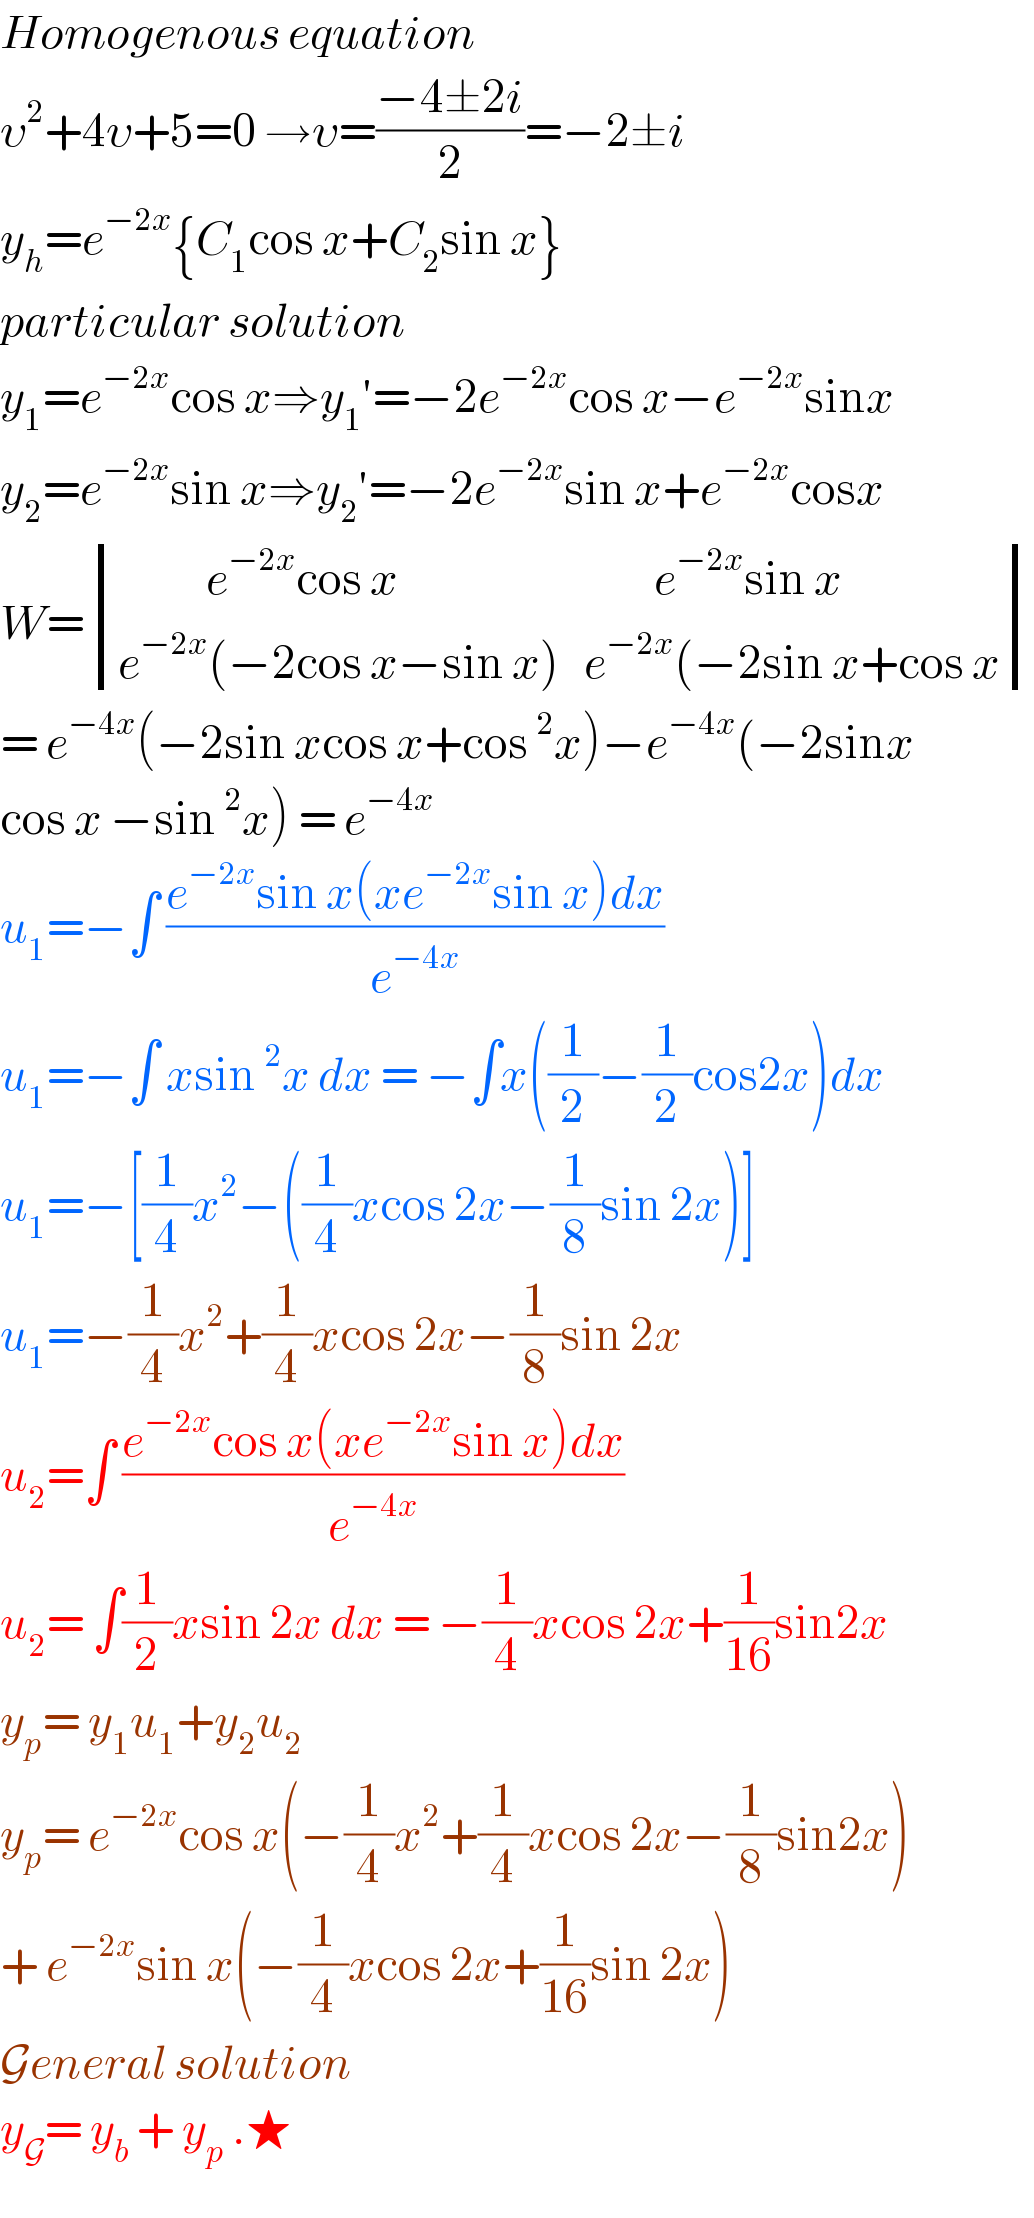 Homogenous equation  υ^2 +4υ+5=0 →υ=((−4±2i)/2)=−2±i  y_h =e^(−2x) {C_1 cos x+C_2 sin x}   particular solution   y_1 =e^(−2x) cos x⇒y_1 ′=−2e^(−2x) cos x−e^(−2x) sinx  y_2 =e^(−2x) sin x⇒y_2 ′=−2e^(−2x) sin x+e^(−2x) cosx  W= determinant (((           e^(−2x) cos x                                e^(−2x) sin x)),((e^(−2x) (−2cos x−sin x)   e^(−2x) (−2sin x+cos x)))  = e^(−4x) (−2sin xcos x+cos^2 x)−e^(−4x) (−2sinx  cos x −sin^2 x) = e^(−4x)   u_1 =−∫ ((e^(−2x) sin x(xe^(−2x) sin x)dx)/e^(−4x) )  u_1 =−∫ xsin^2 x dx = −∫x((1/2)−(1/2)cos2x)dx  u_1 =−[(1/4)x^2 −((1/4)xcos 2x−(1/8)sin 2x)]  u_1 =−(1/4)x^2 +(1/4)xcos 2x−(1/8)sin 2x  u_2 =∫ ((e^(−2x) cos x(xe^(−2x) sin x)dx)/e^(−4x) )  u_2 = ∫(1/2)xsin 2x dx = −(1/4)xcos 2x+(1/(16))sin2x  y_p = y_1 u_1 +y_2 u_2   y_p = e^(−2x) cos x(−(1/4)x^2 +(1/4)xcos 2x−(1/8)sin2x)  + e^(−2x) sin x(−(1/4)xcos 2x+(1/(16))sin 2x)  General solution   y_G = y_b  + y_p  .★  